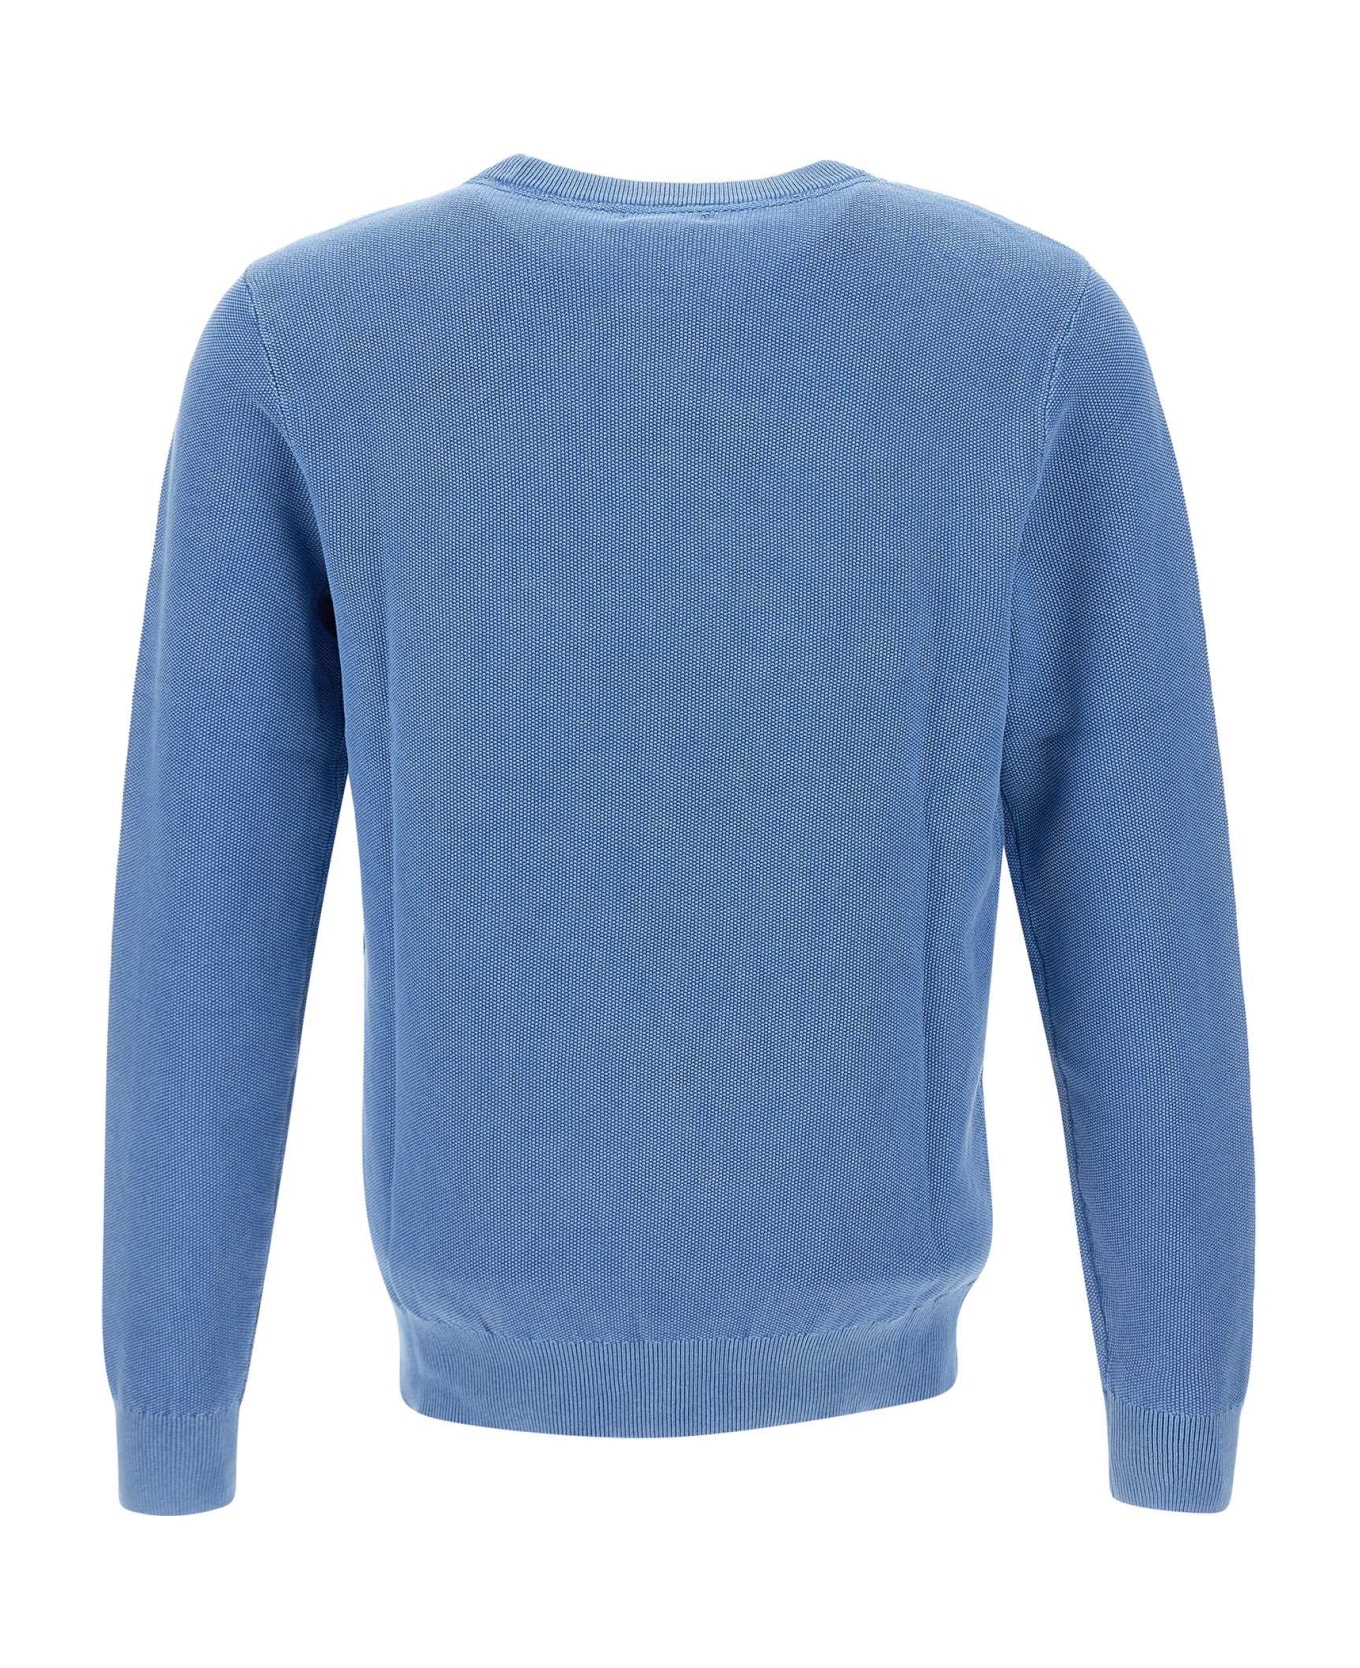 Sun 68 "round Vintage" Sweater Cotton - BLUE